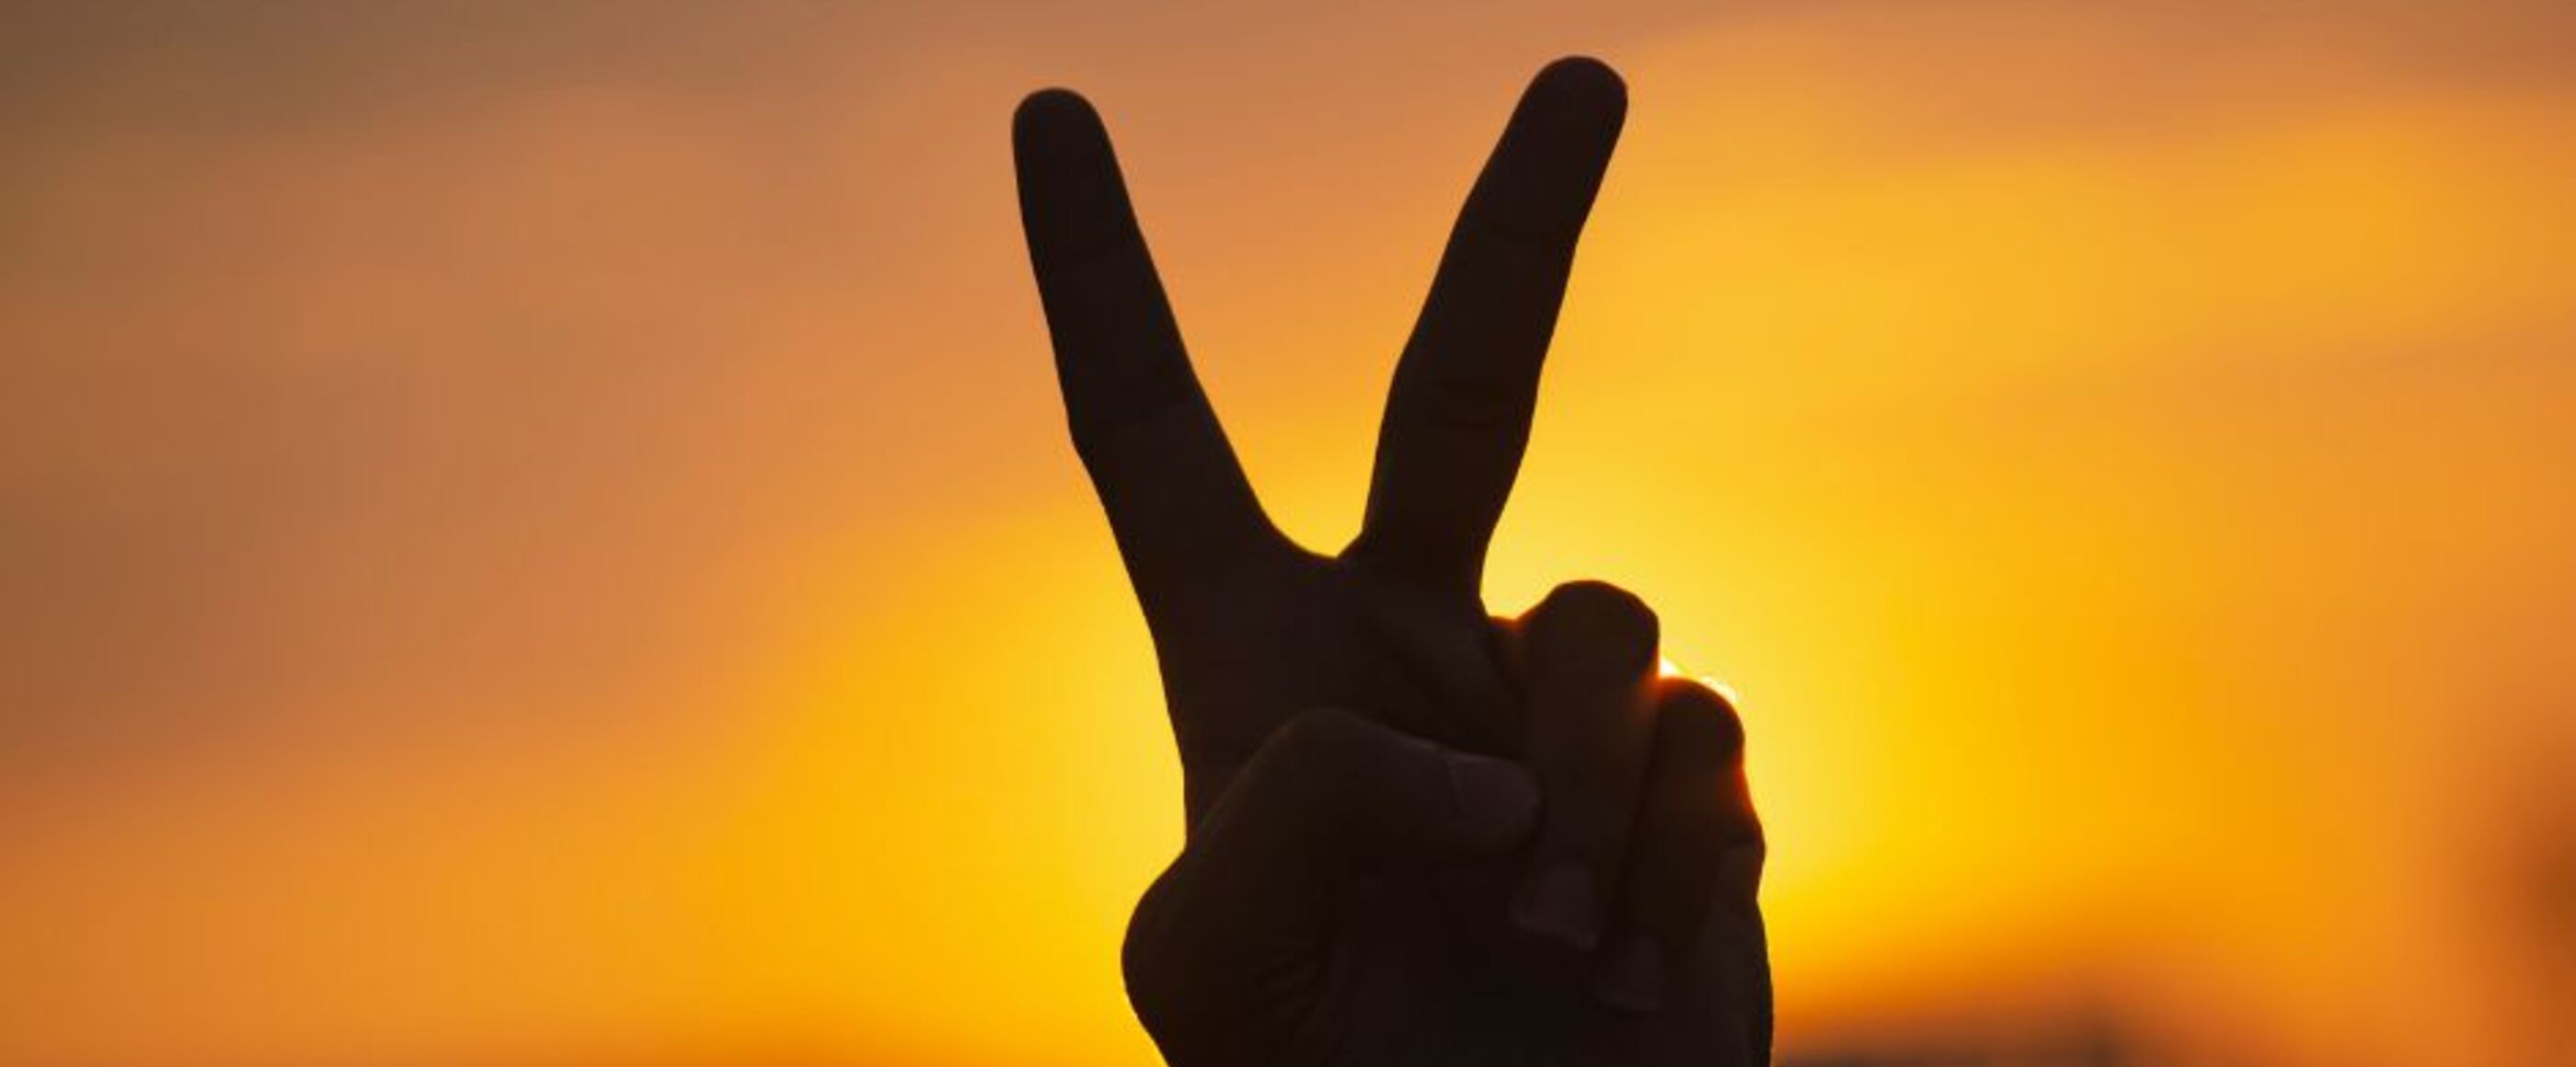 Eine Hand formt das Peace-Zeichen. Sie ist nur als Silhouette dunkel gegen einen orange leuchtenden Sonnenuntergang zu sehen.